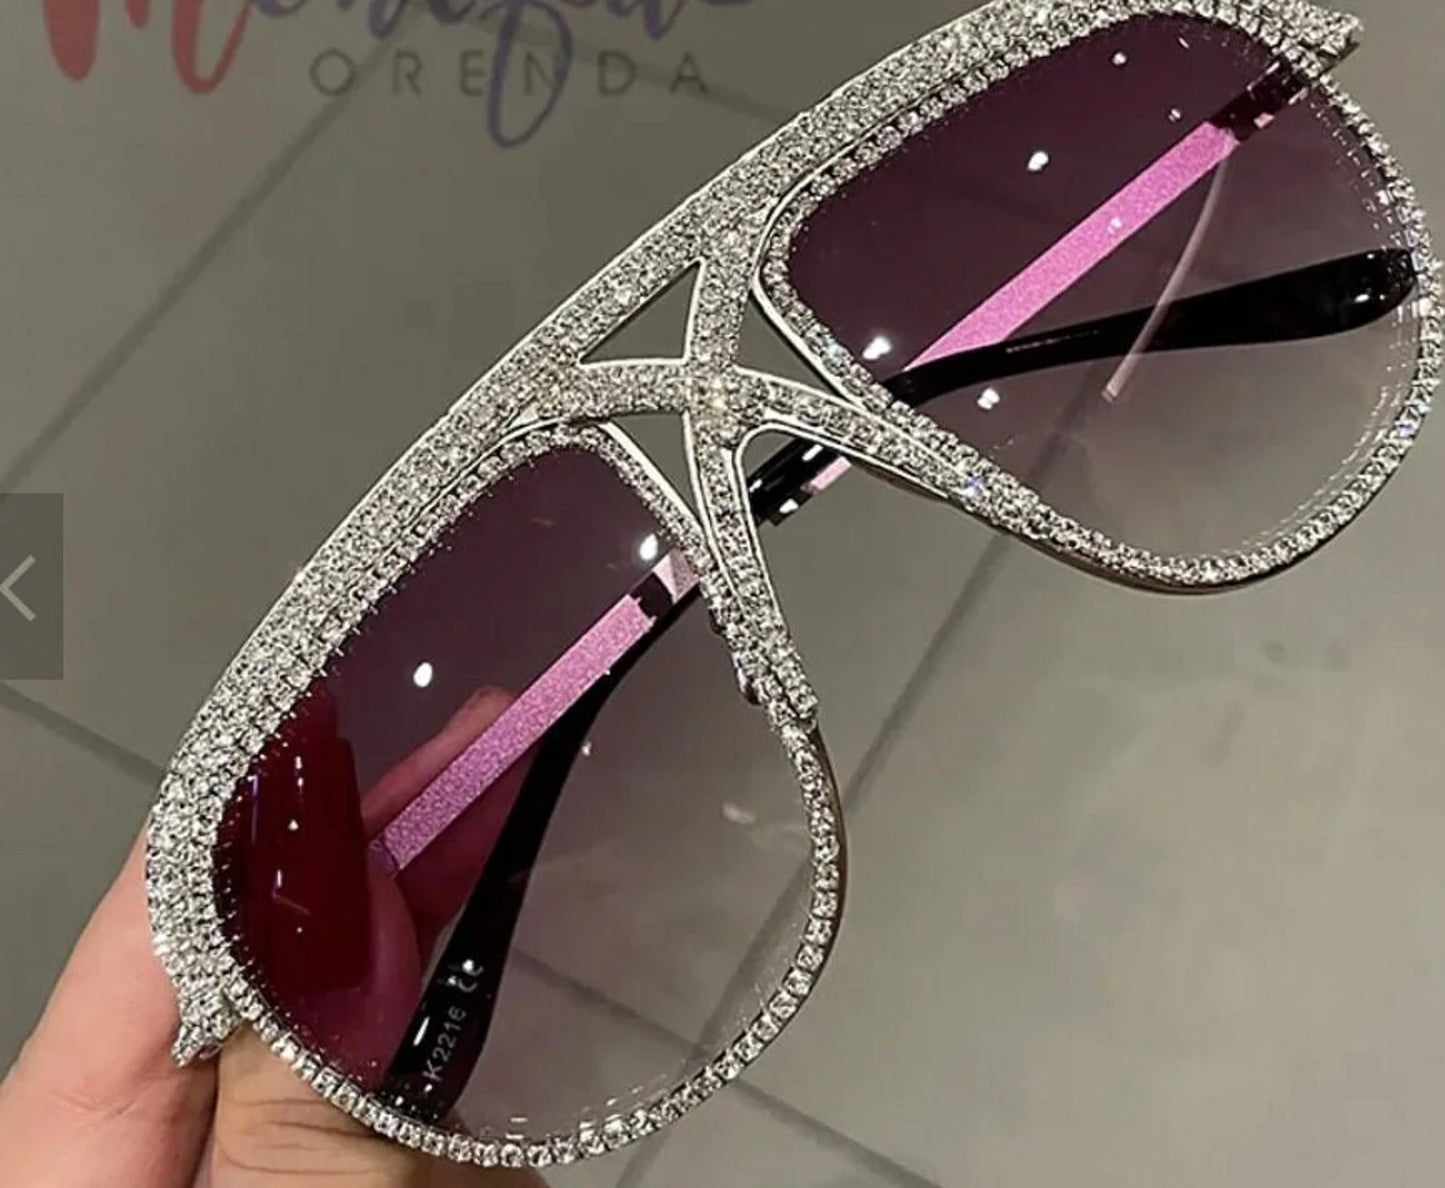 Monique Rhinestone sunglasses